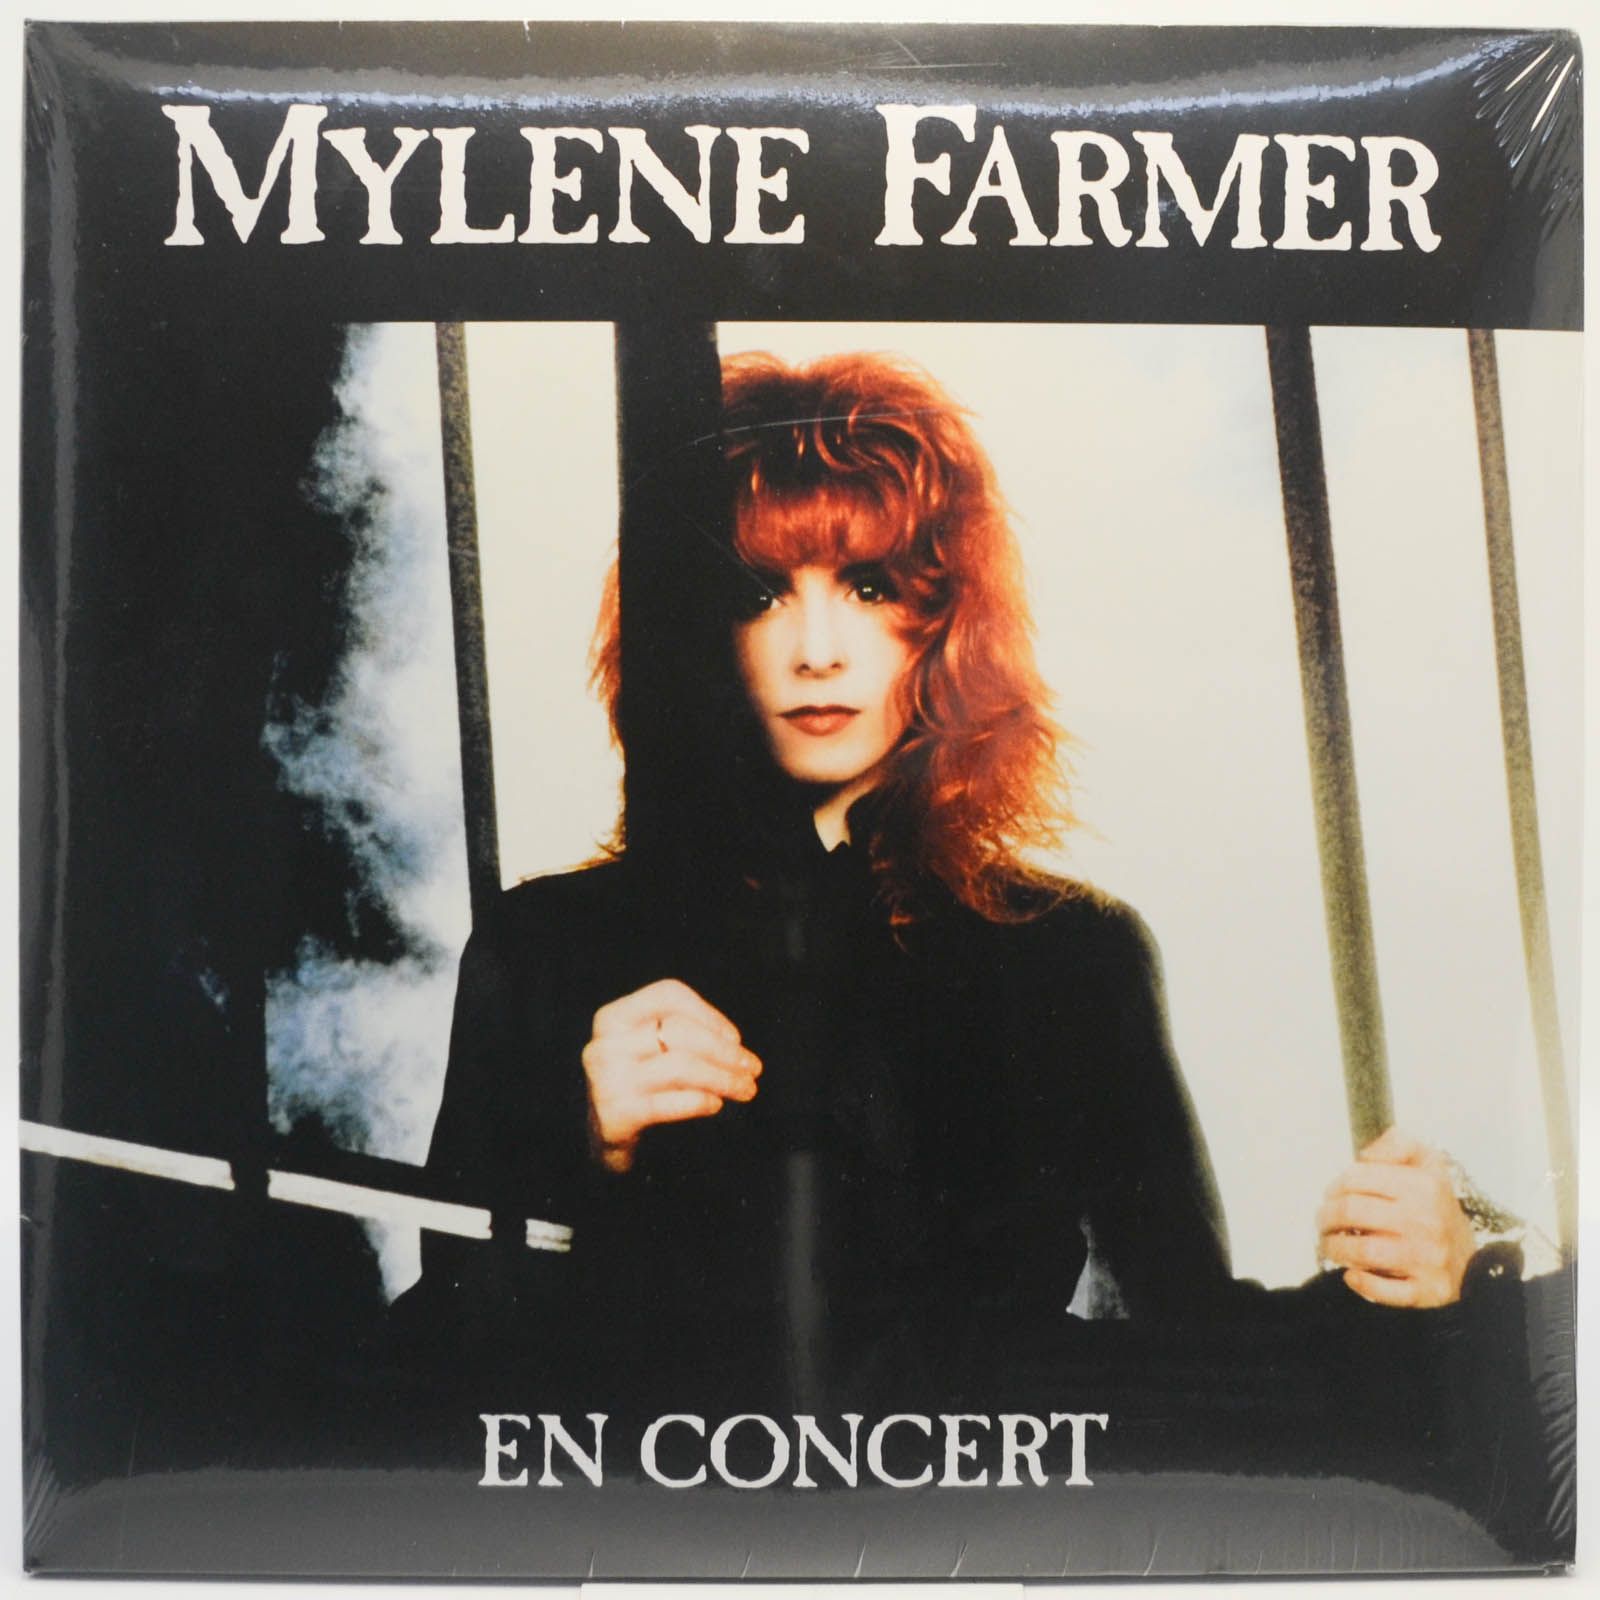 Mylene Farmer — En Concert (2LP, France), 1989